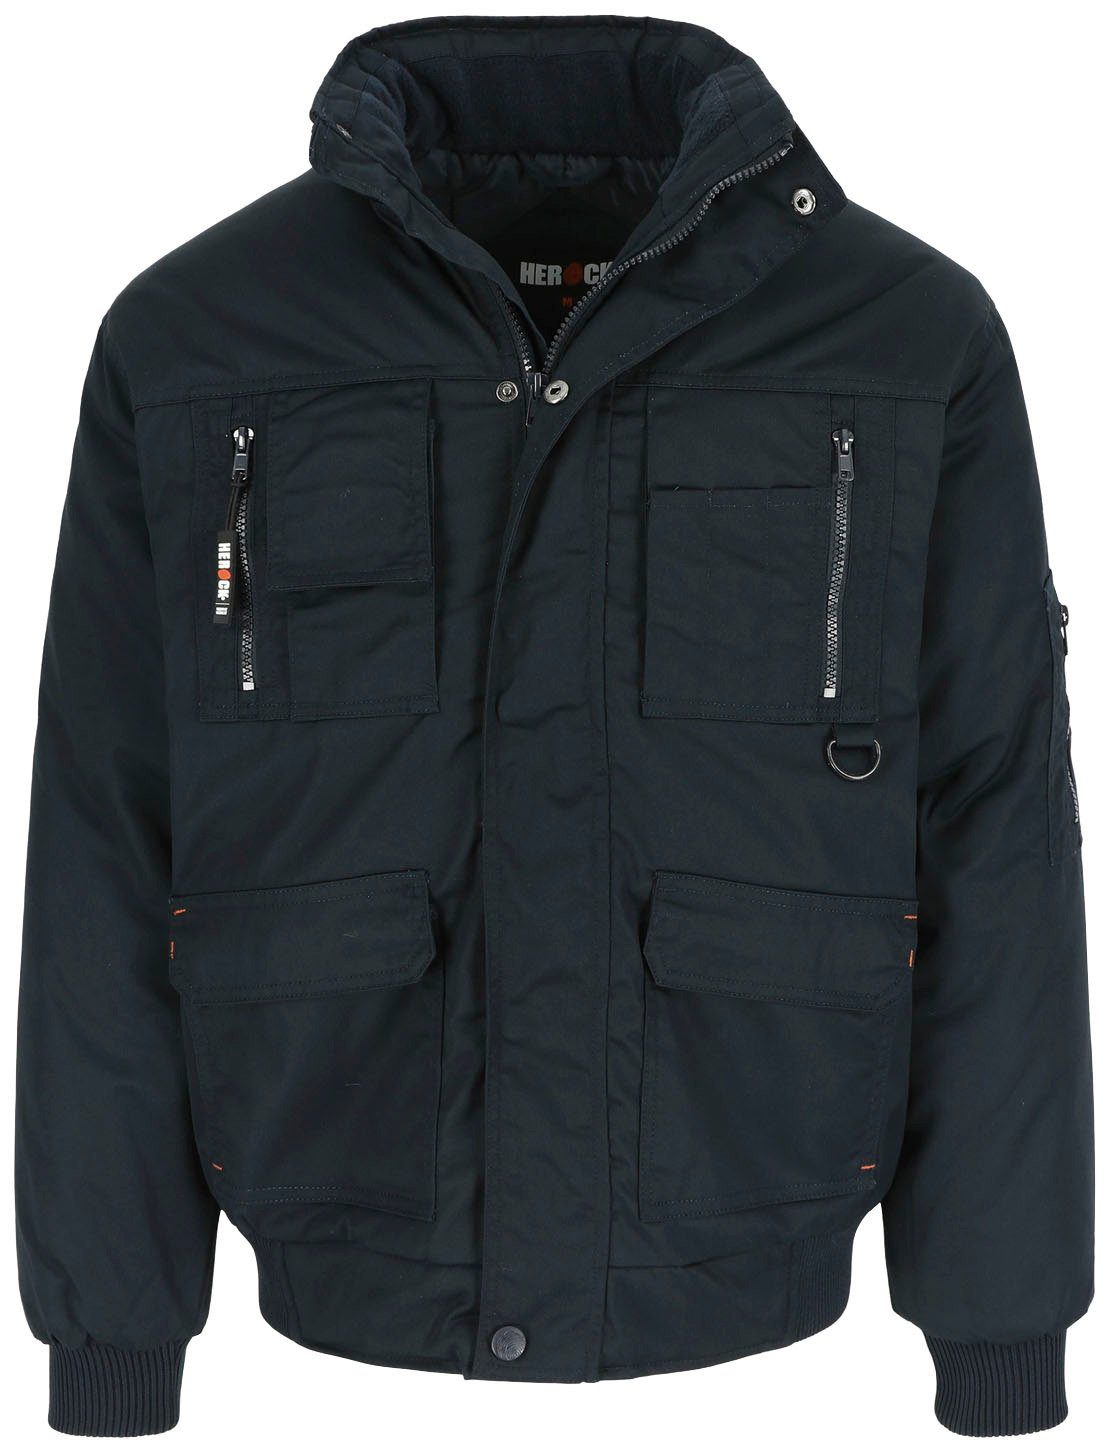 Herock Arbeitsjacke Typhon Jacke Wasserabweisend mit Fleece-Kragen, robust, viele Taschen, viele Farben marine | Arbeitsjacken